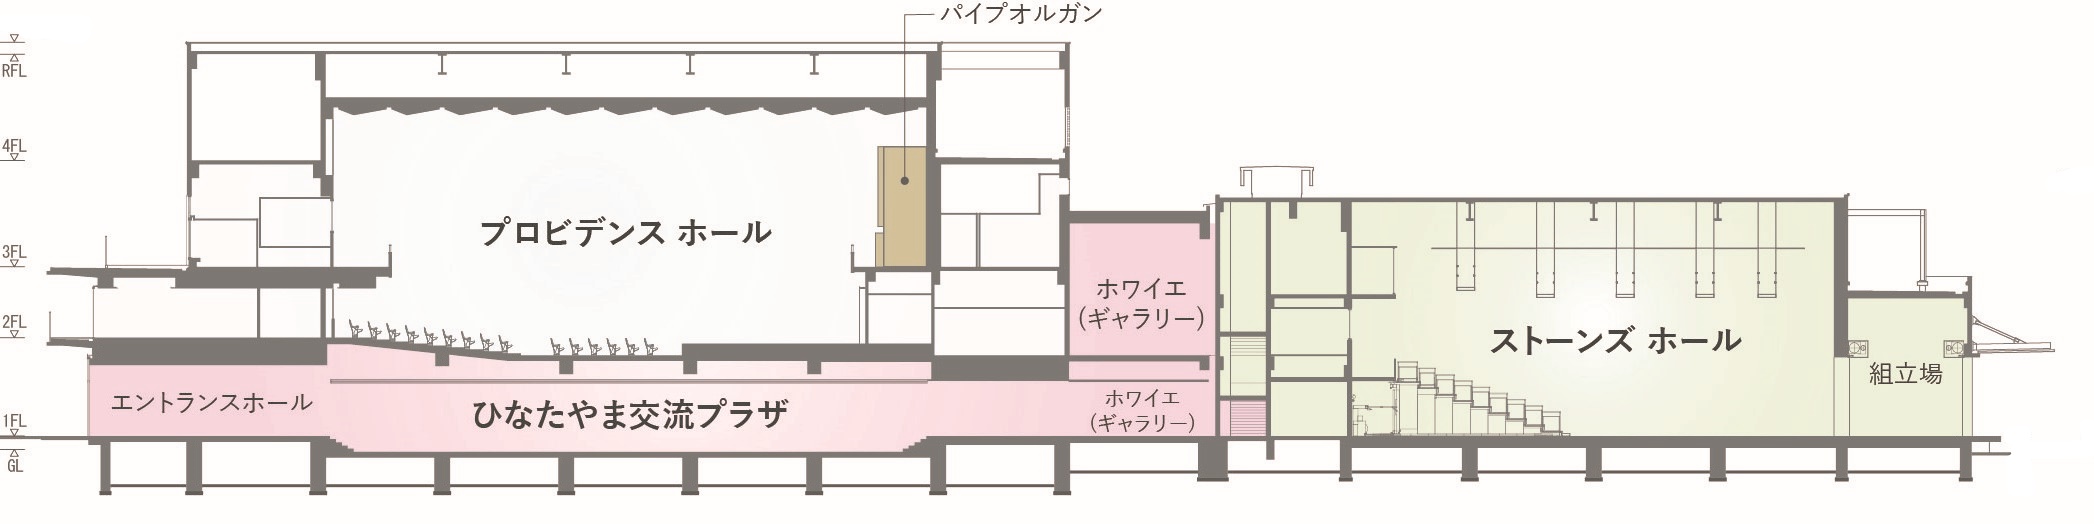 桜美林芸術文化ホールの断面図